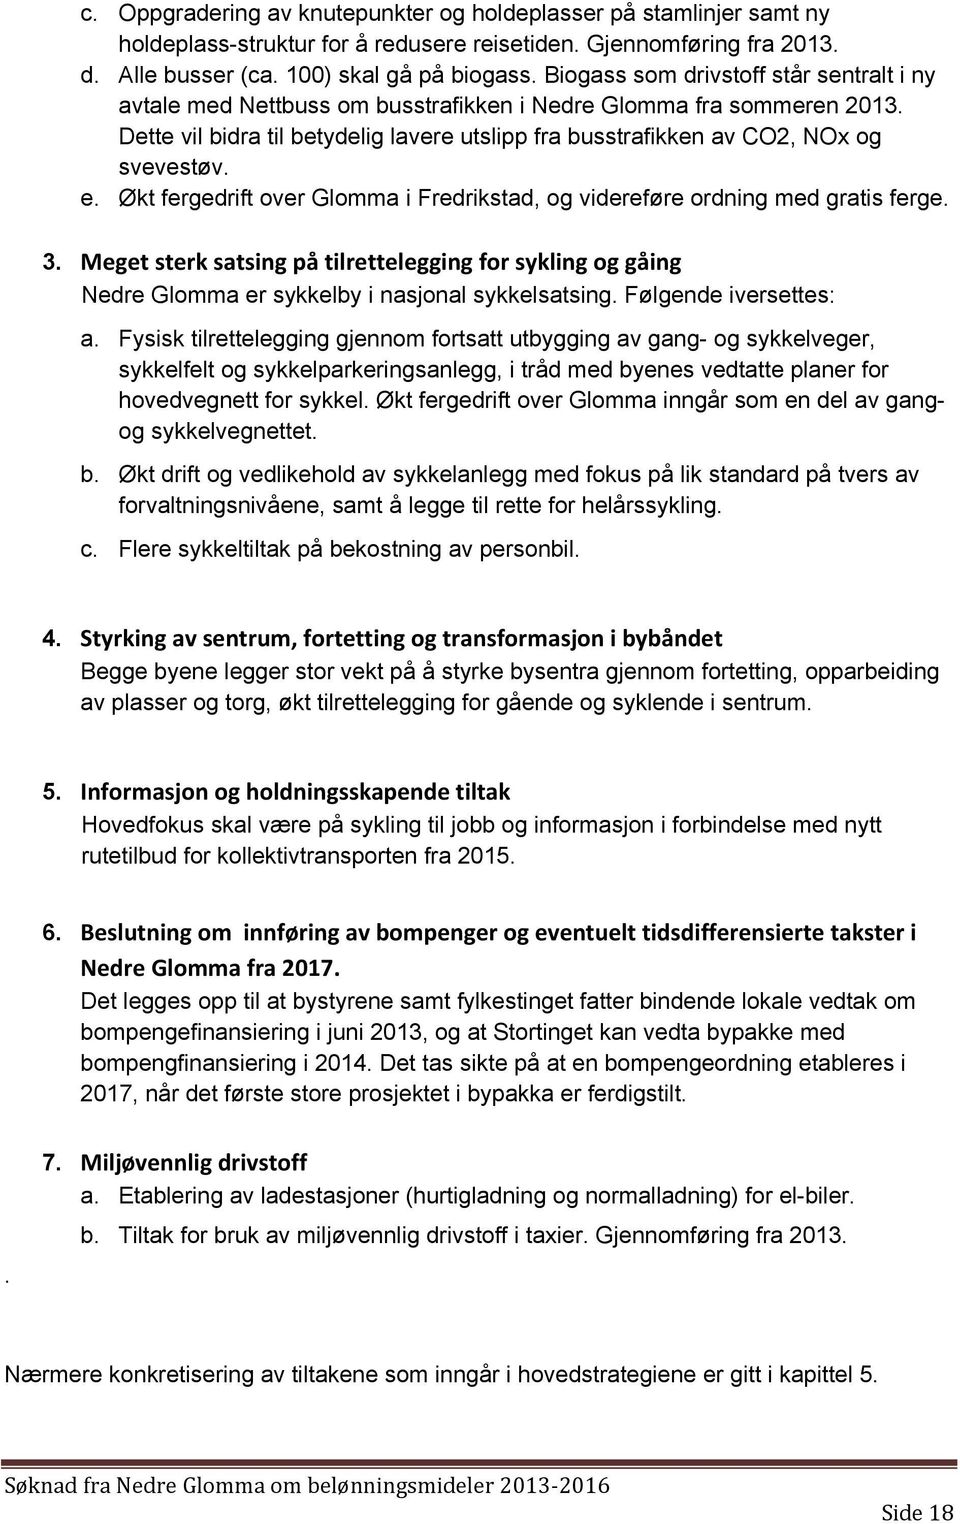 e. Økt fergedrift over Glomma i Fredrikstad, og videreføre ordning med gratis ferge. 3. Meget sterk satsing på tilrettelegging for sykling og gåing Nedre Glomma er sykkelby i nasjonal sykkelsatsing.